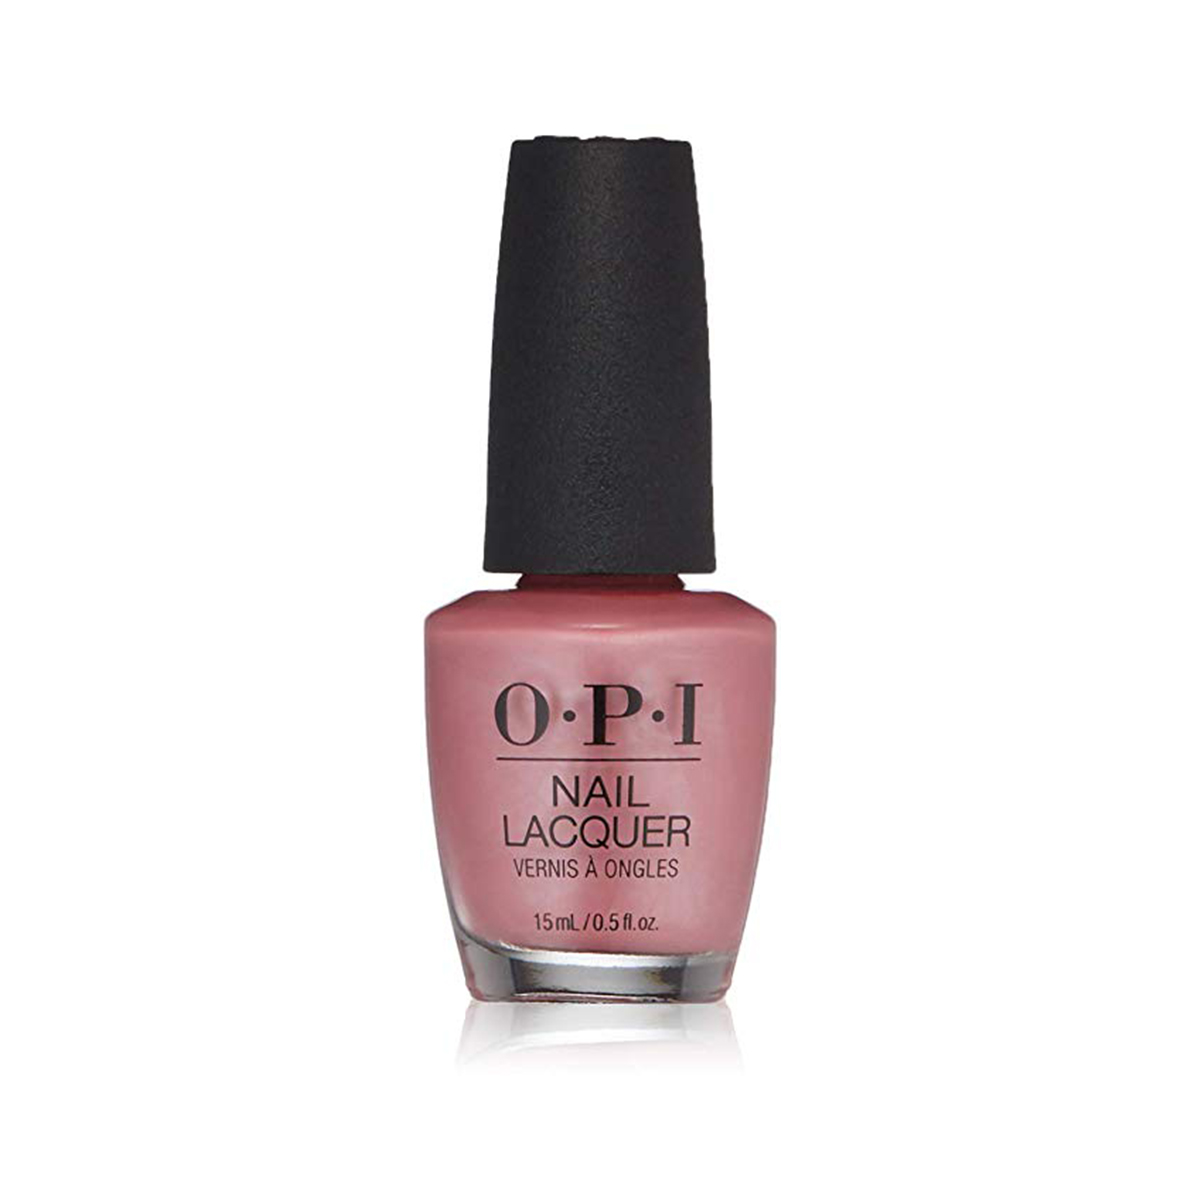 opi pink nail colors